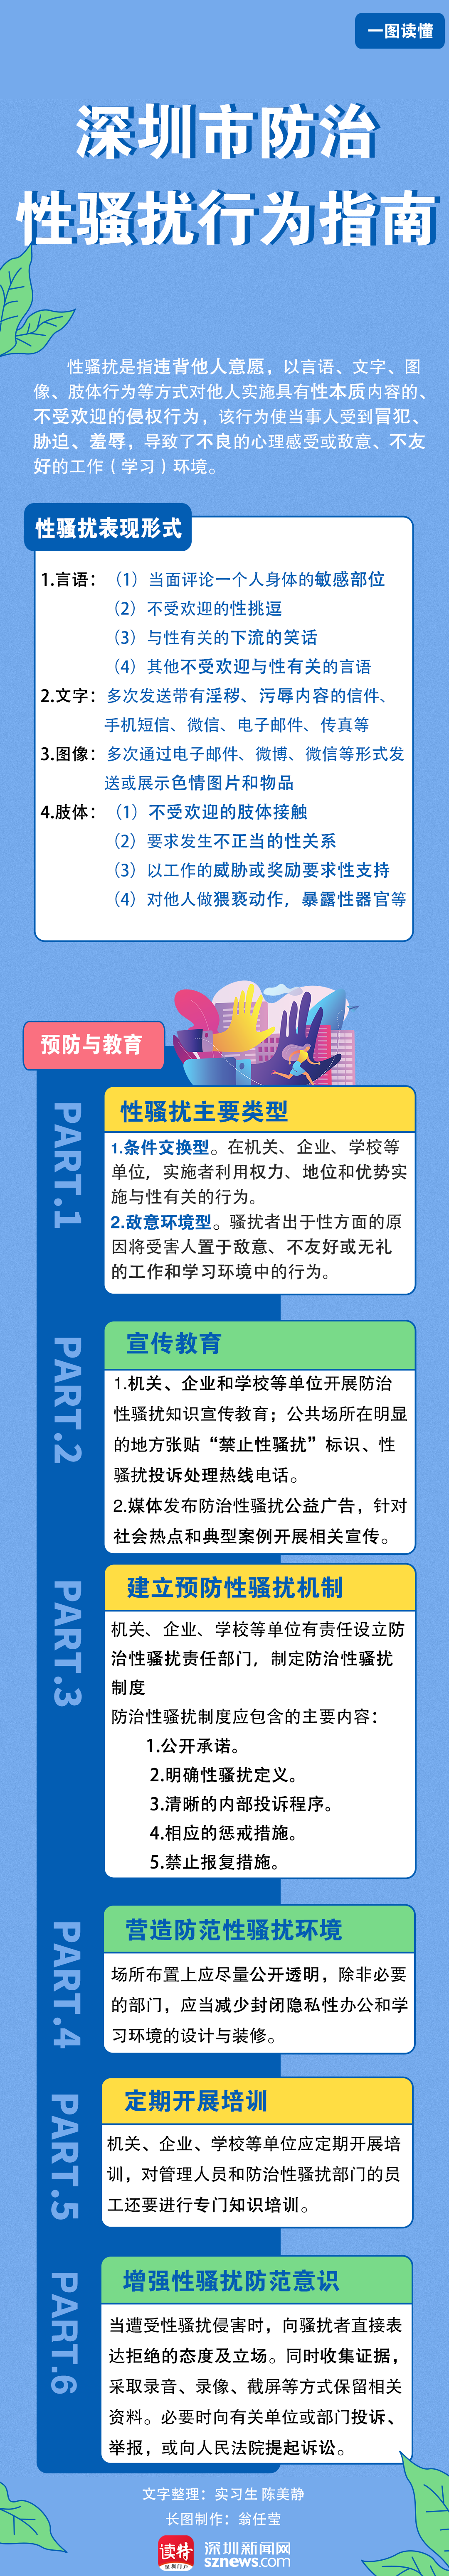 一图读懂| 深圳市防治性骚扰行为指南让你大胆说“不”！